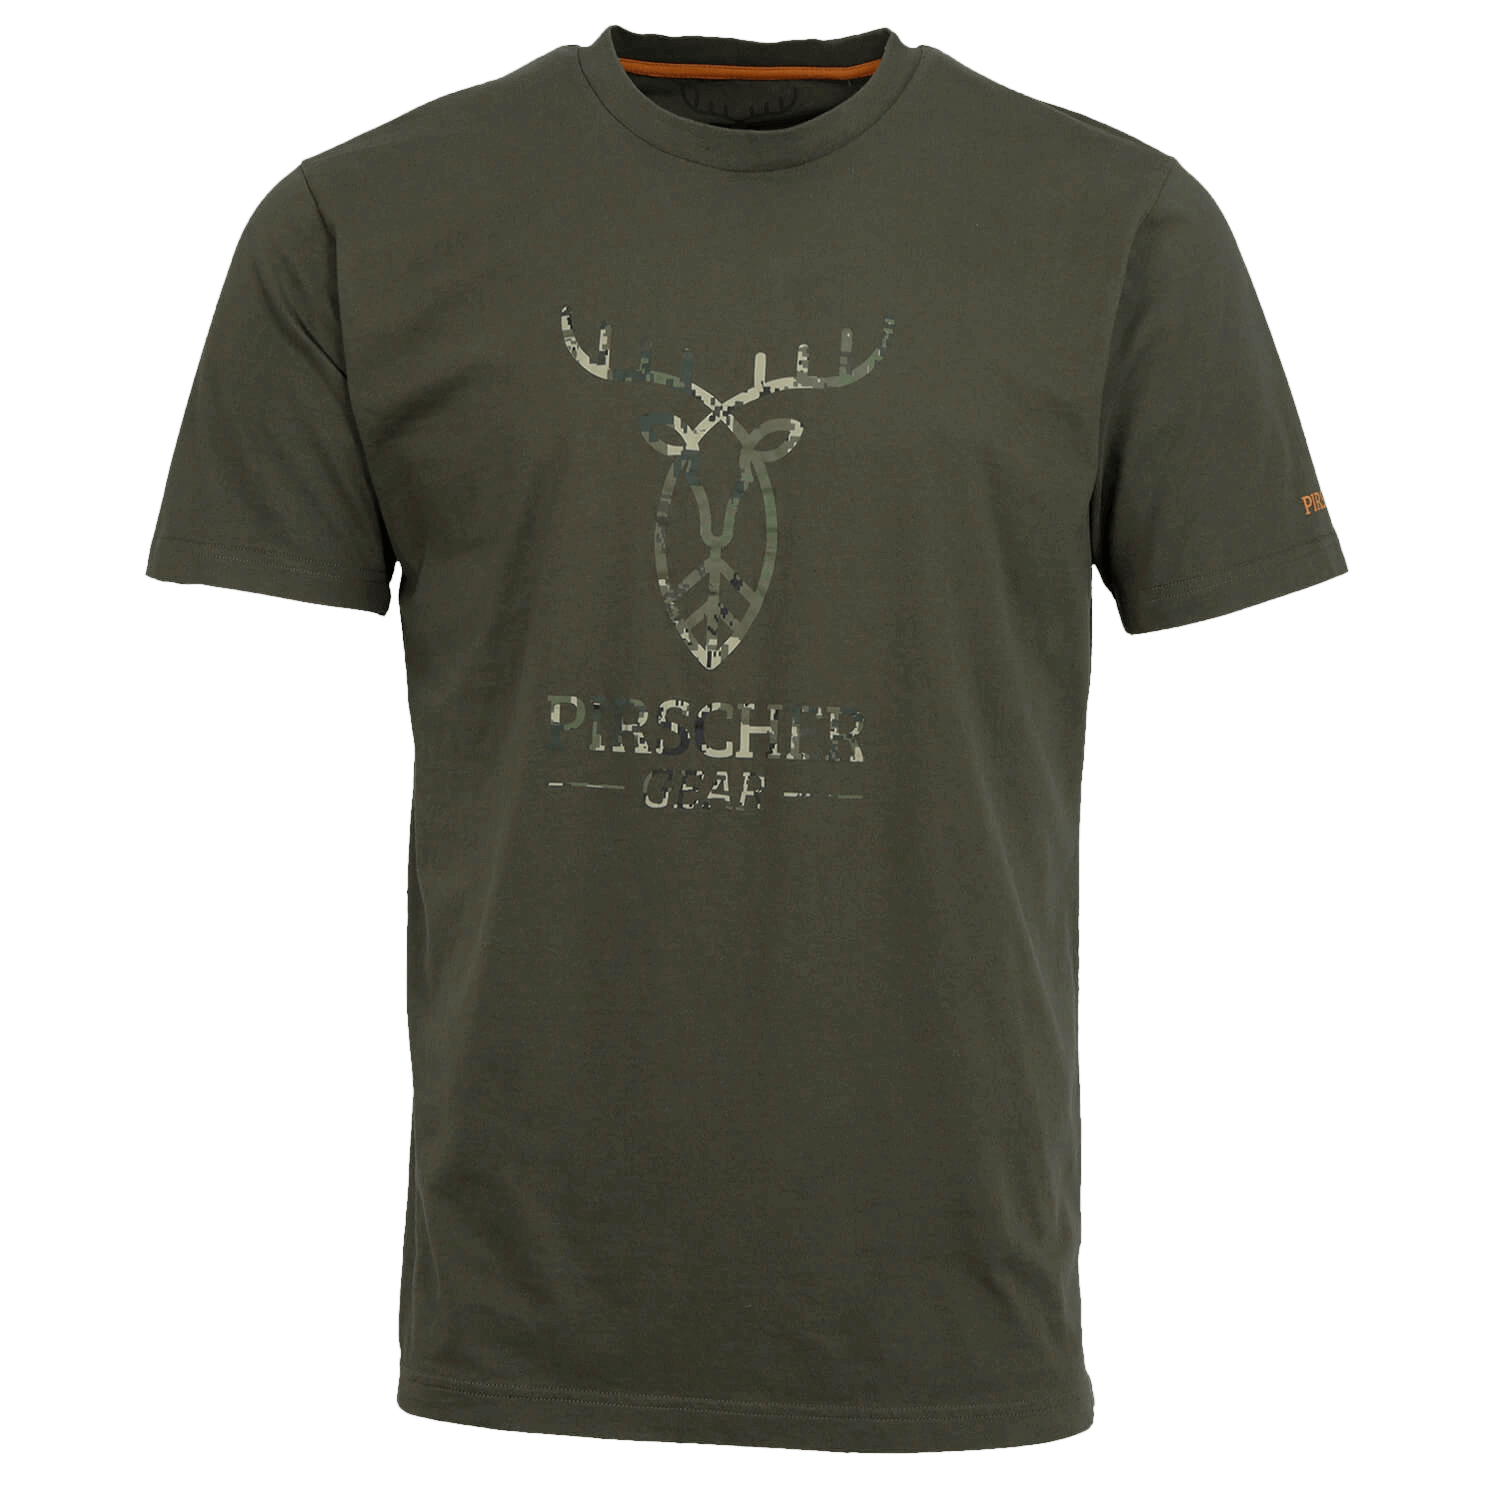 Pirscher Gear T-Shirt Full Logo (Optimax) - Gifts For Hunters